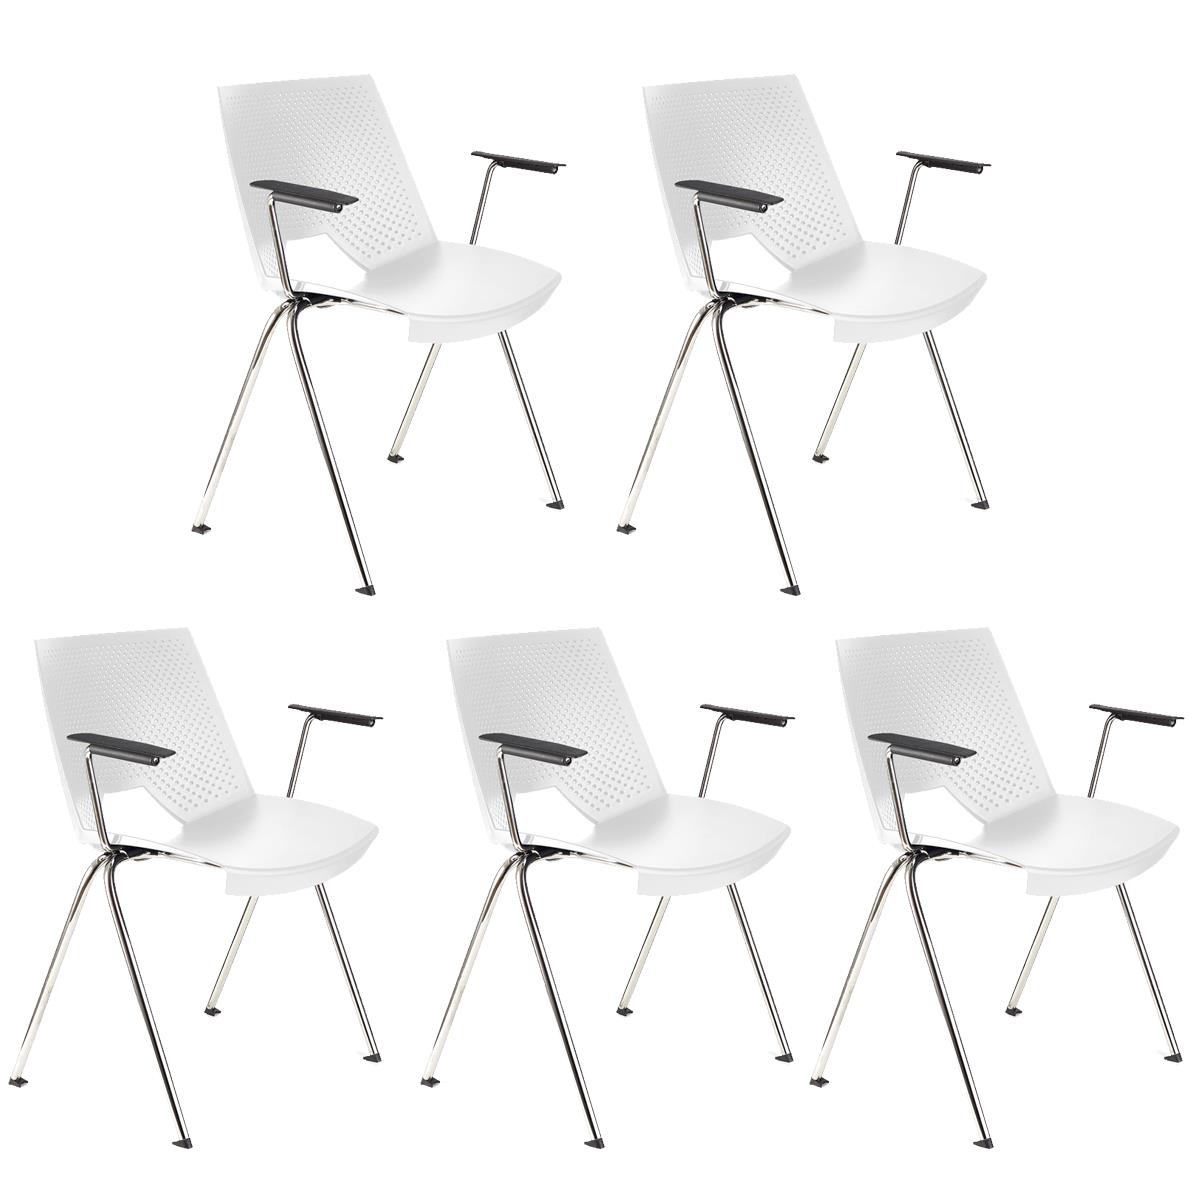 Lote 5 Cadeiras de Visita ENZO COM BRAÇOS, Confortável e Empilhável, Cor Branco